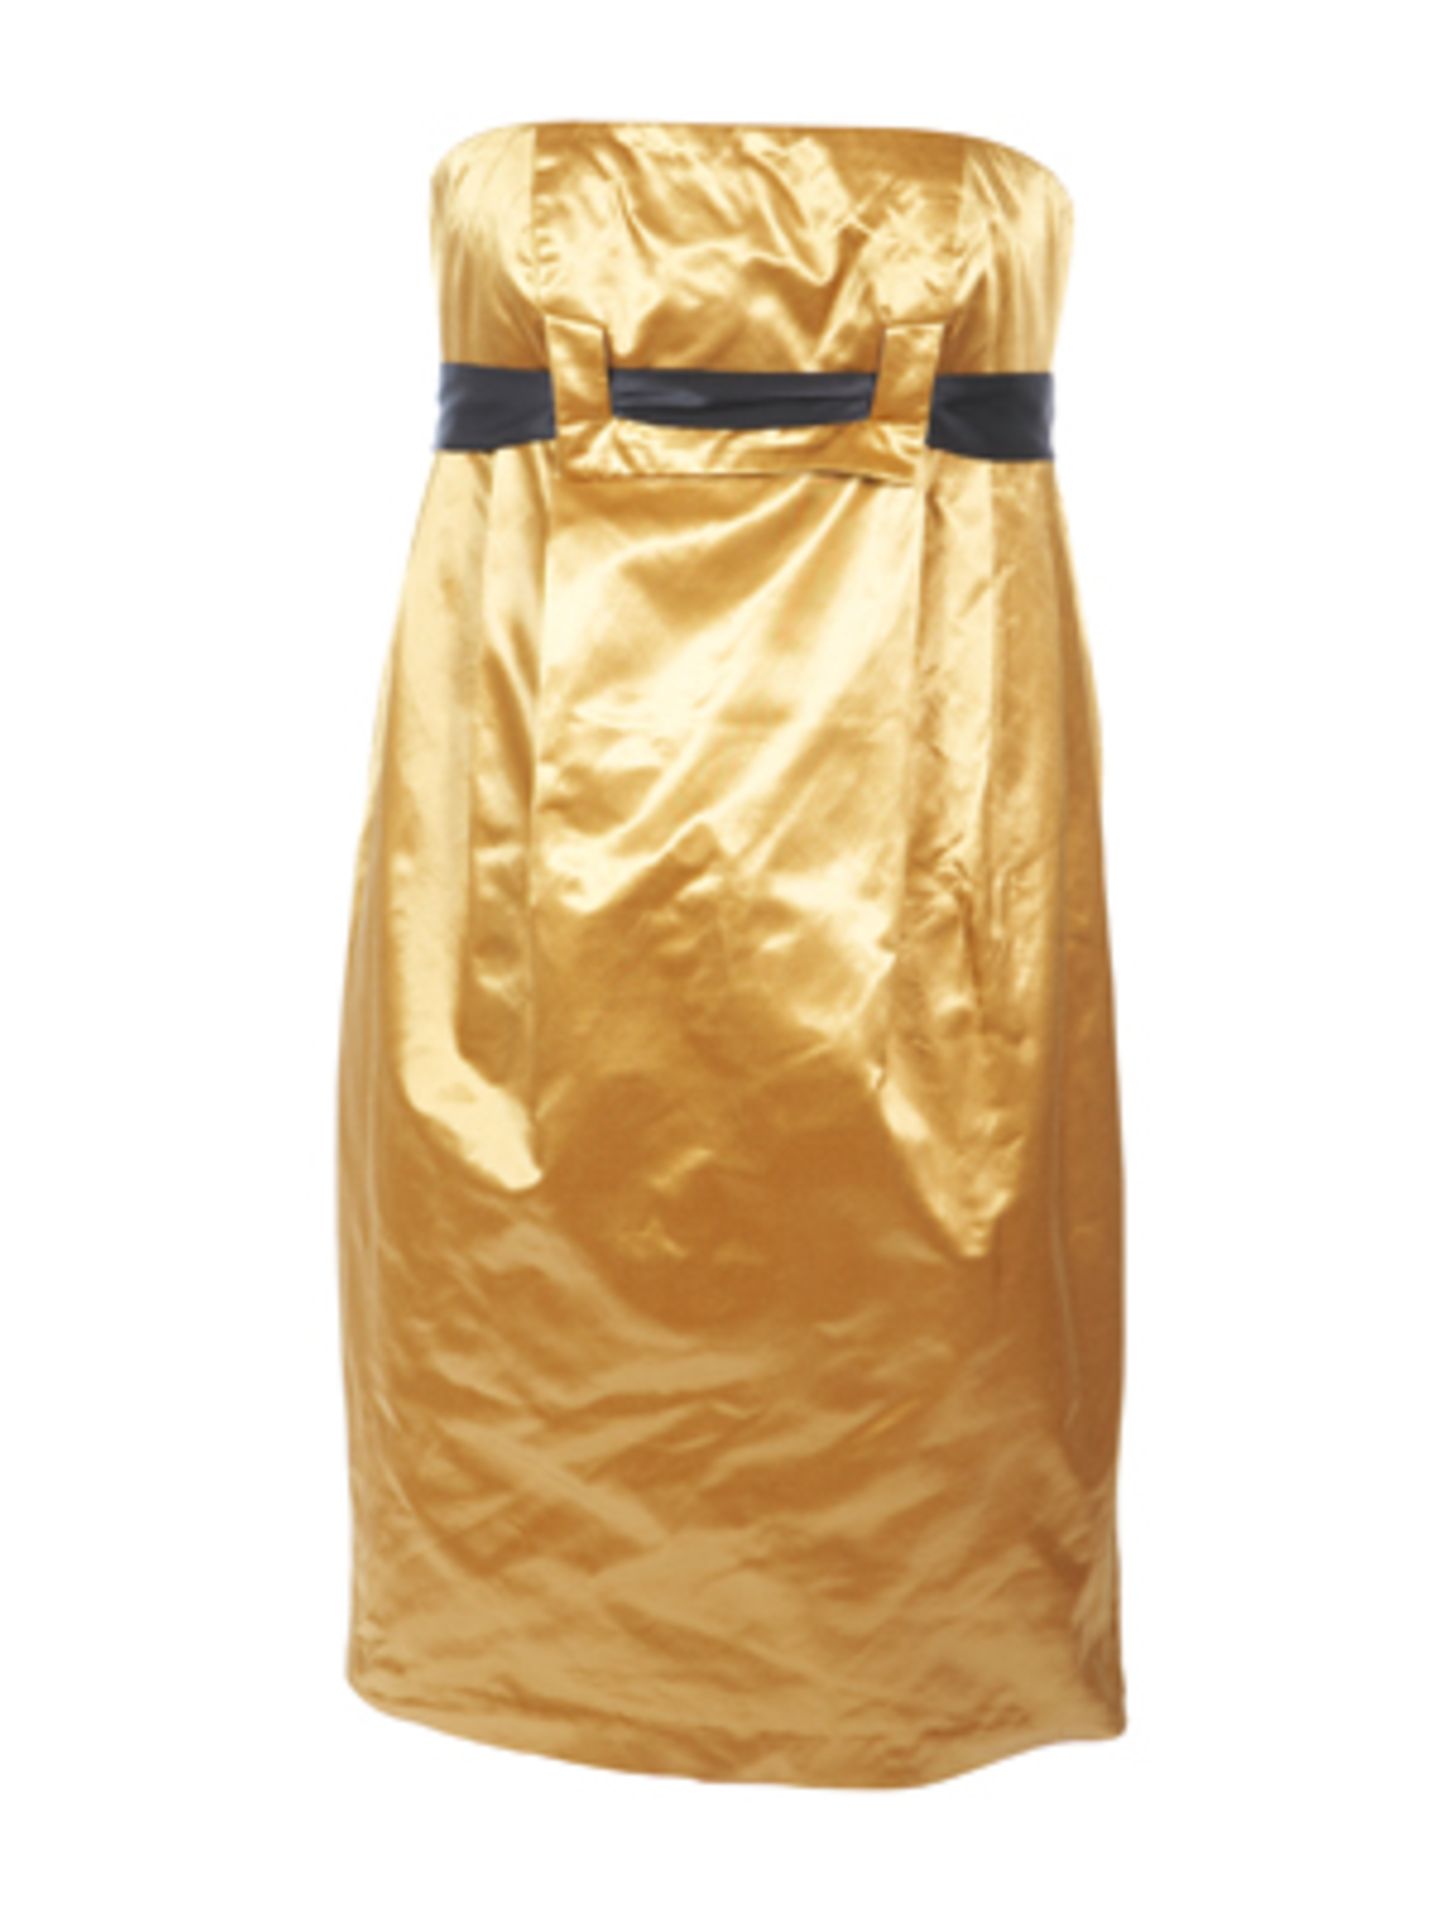 Trägerloses Kleid in metallischem Gold mit Taillengürtel von Selected, um 100 Euro.